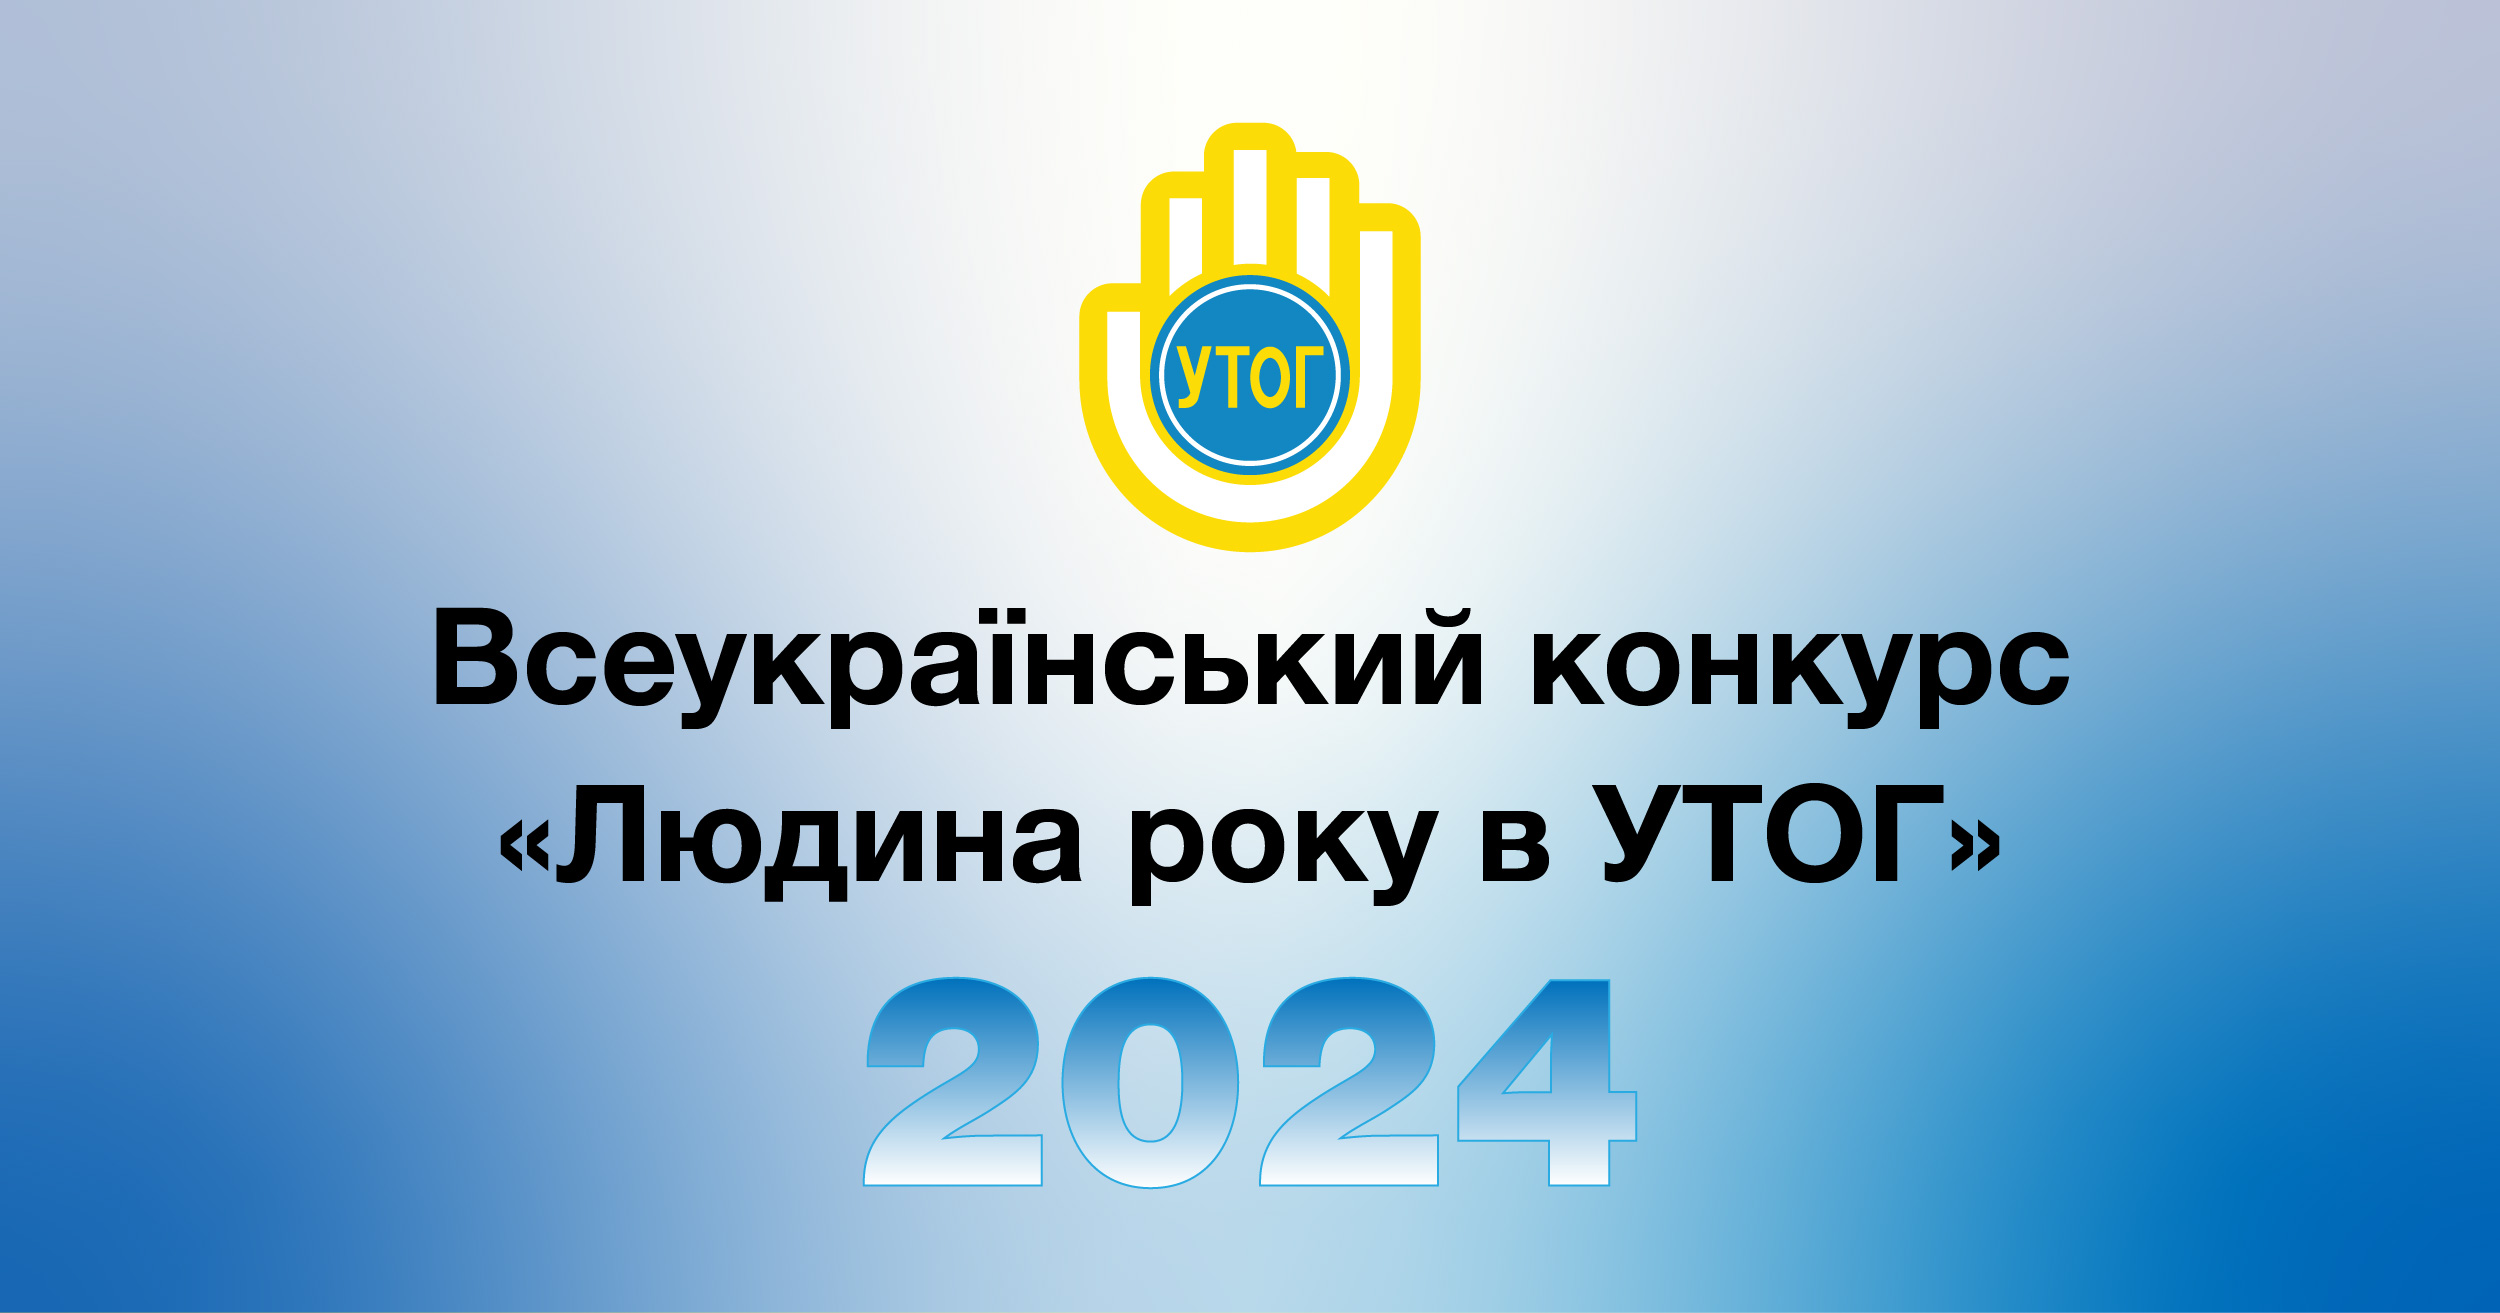 Всеукраїнський конкурс "Людина року в УТОГ" 2024